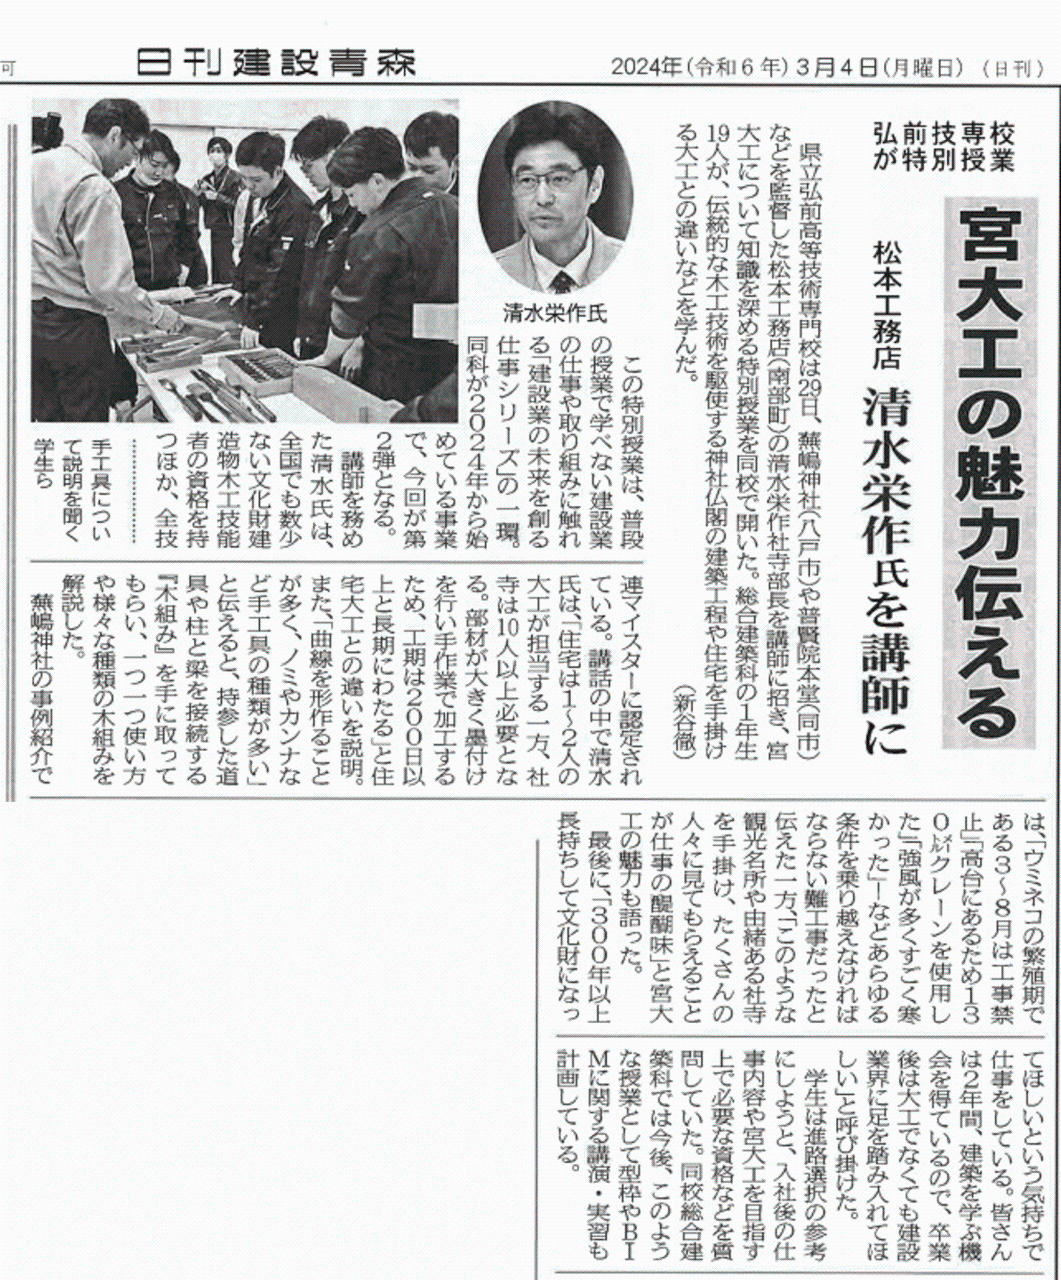 県立弘前高等技術専門校にて行われた『宮大工について知識を深める特別授業』の様子が「日刊建設青森」に掲載されました。